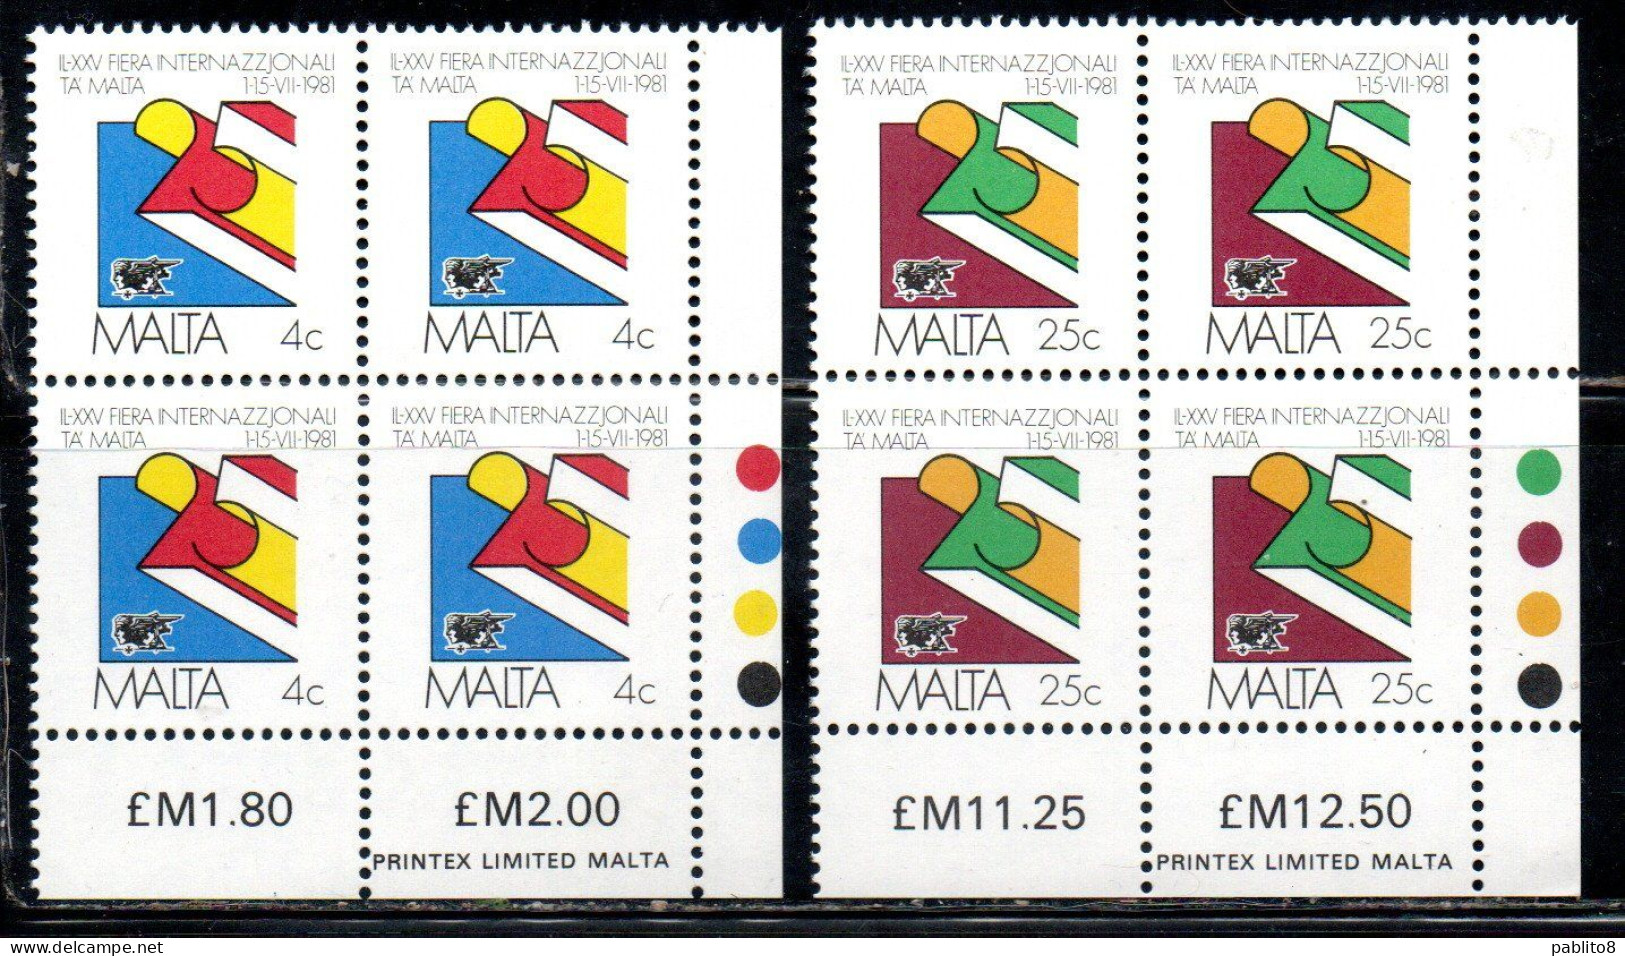 MALTA 1981 MALTESE TRADE FAIR FIERA DEL COMMERCIO COMPLETE SET SERIE COMPLETA MNH - Malte